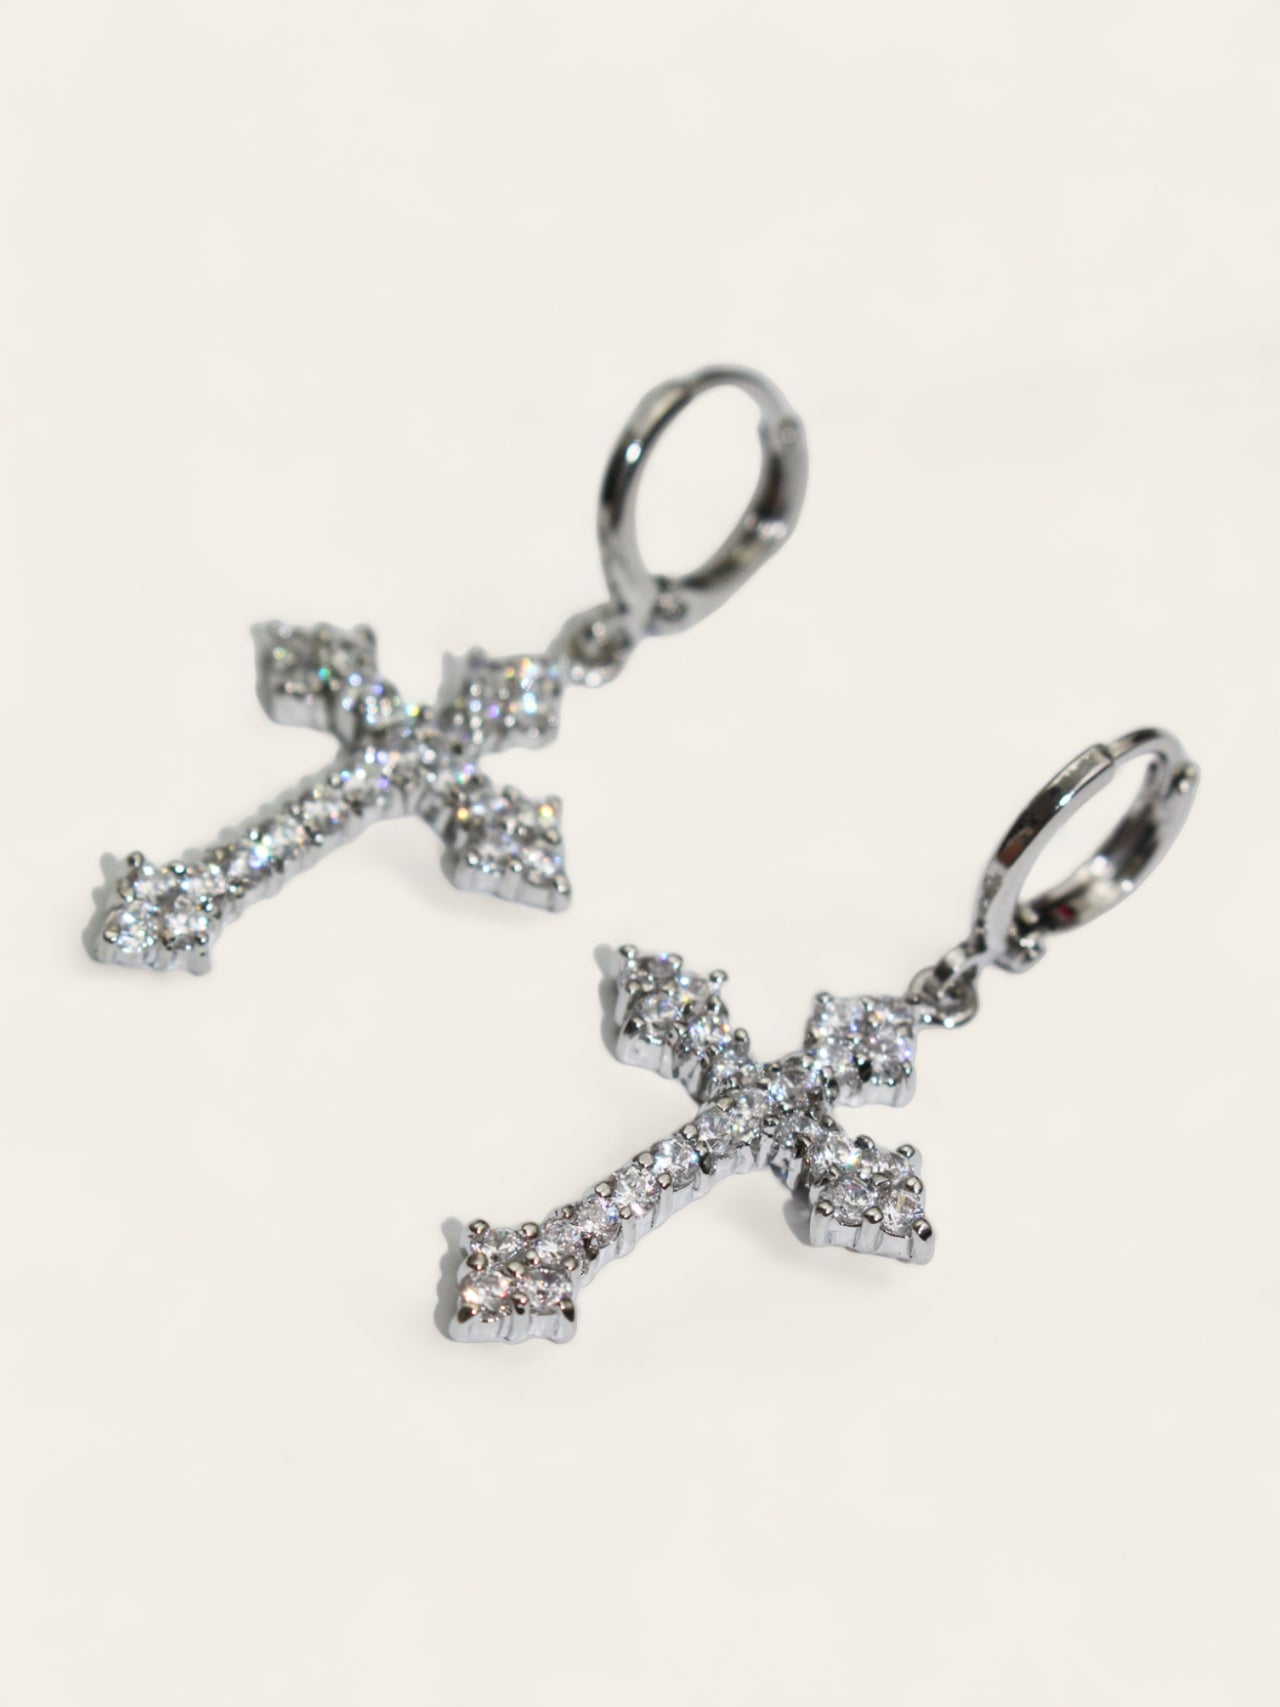 Silver Crystal Cross Drop Earrings